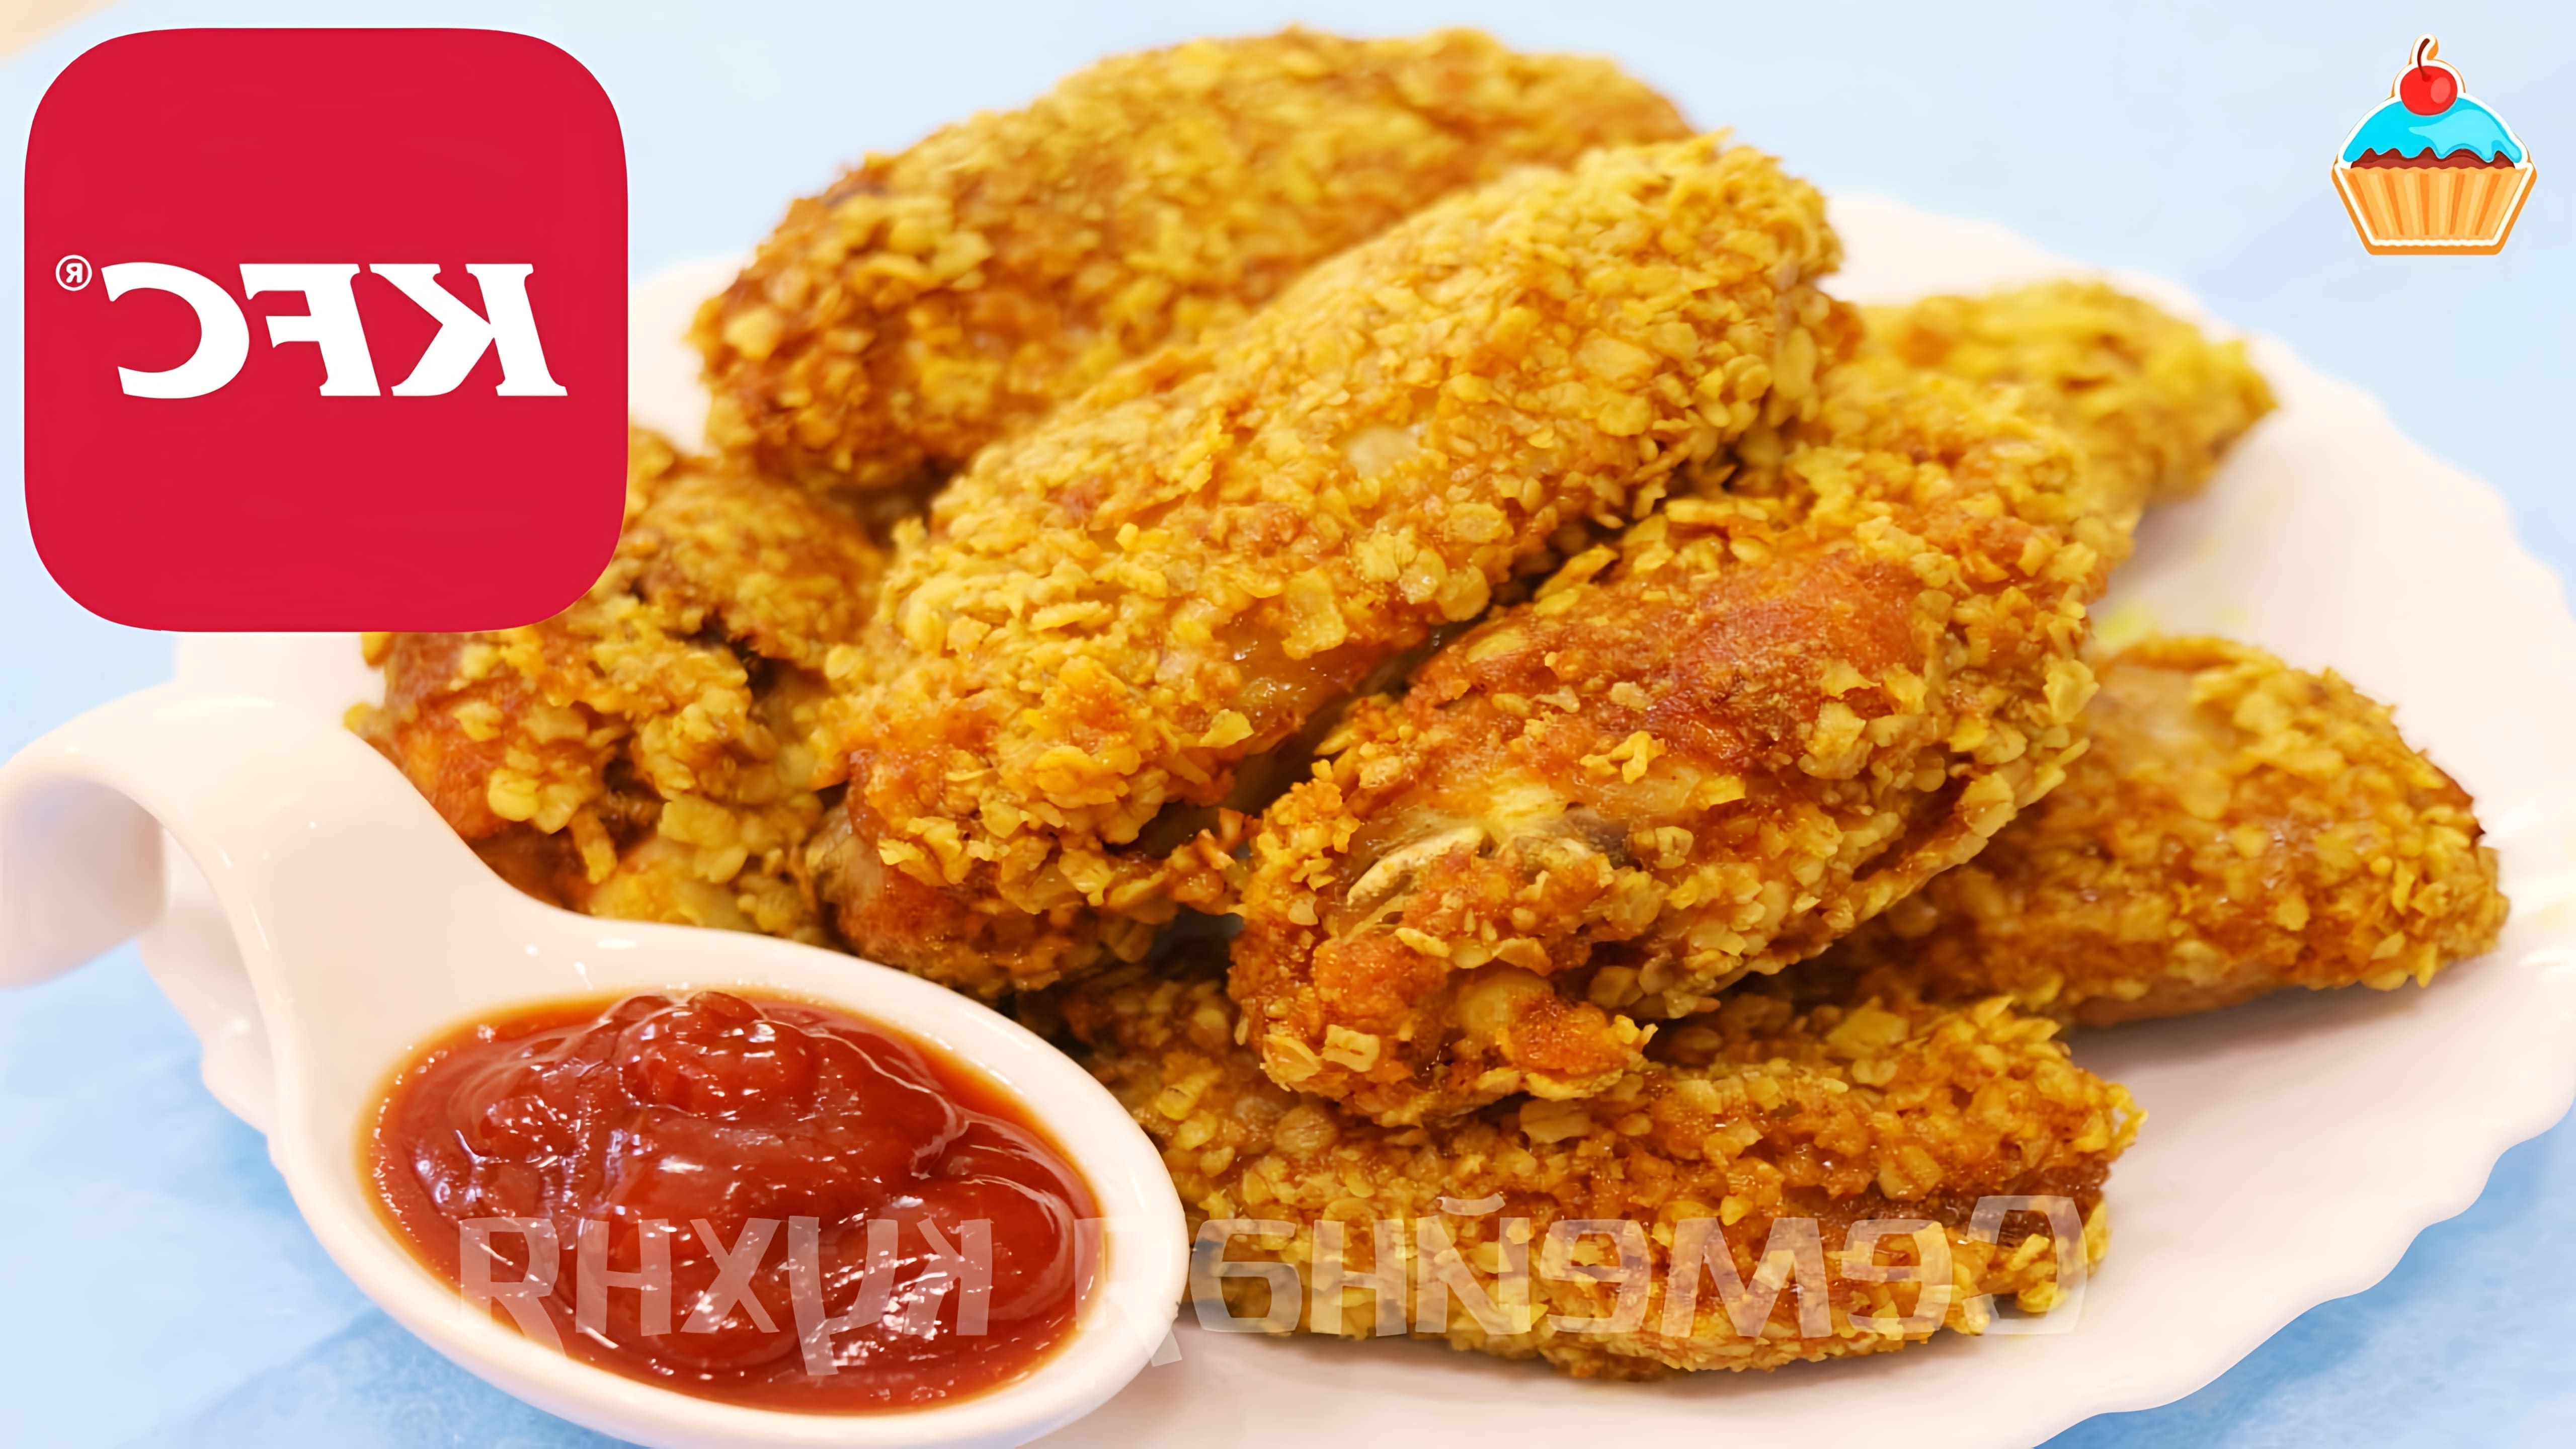 В этом видео демонстрируется процесс приготовления куриных крылышек KFC по семейному рецепту